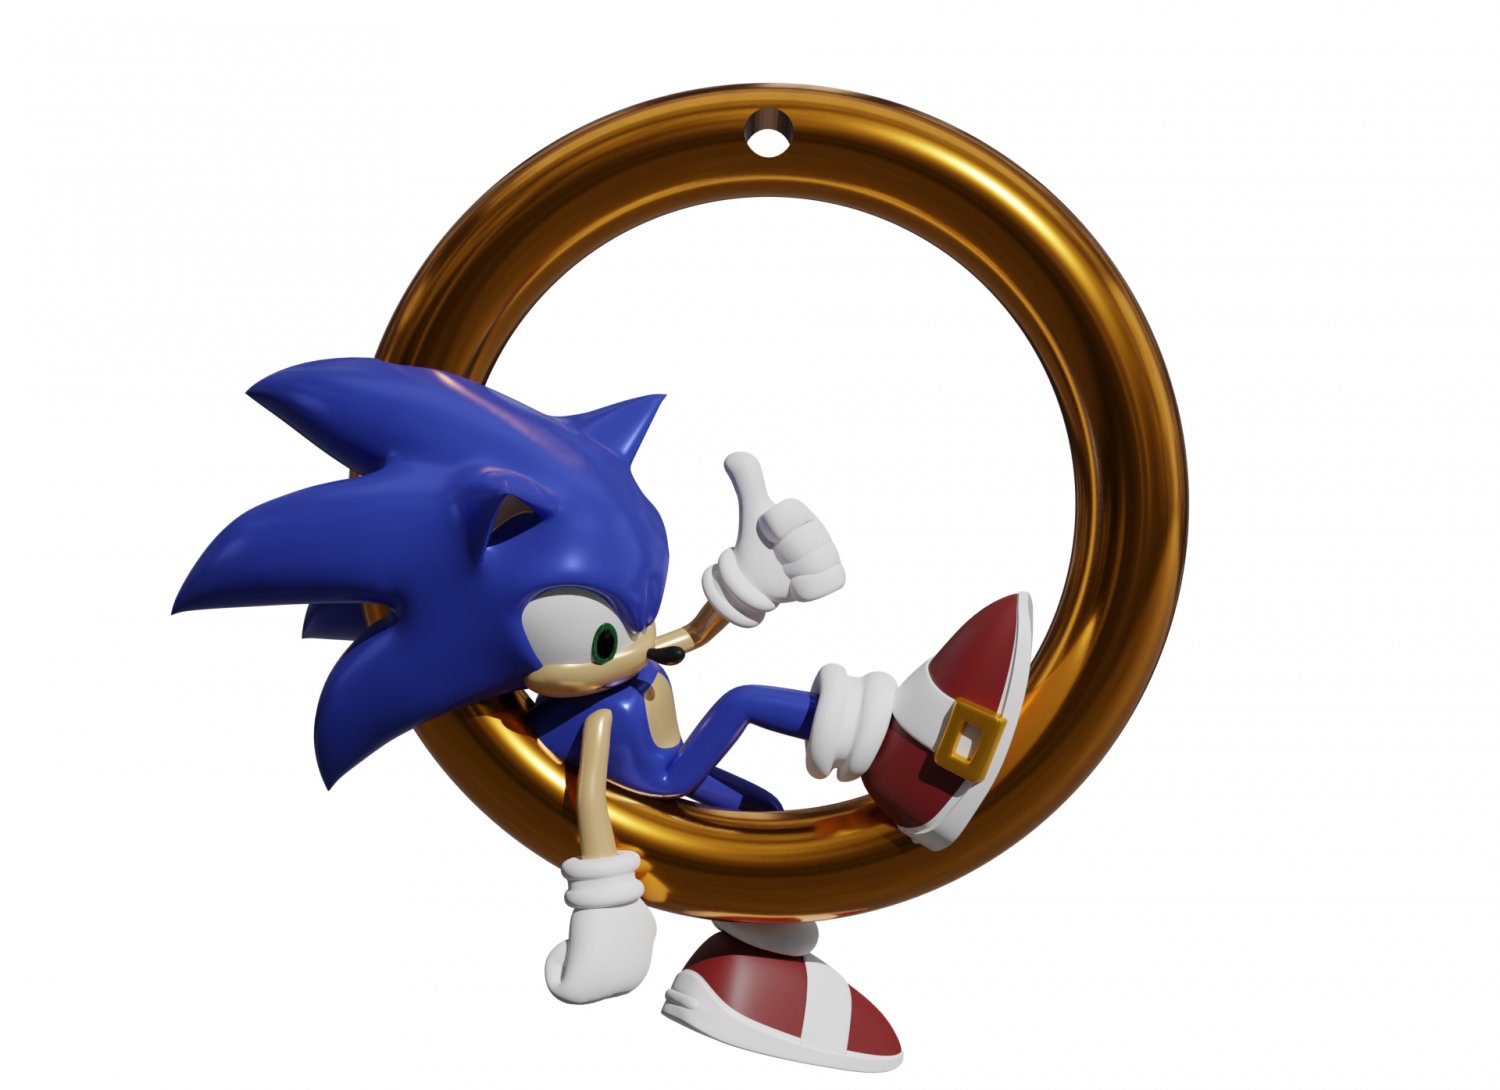 28.422 imagens, fotos stock, objetos 3D e vetores de Sonic